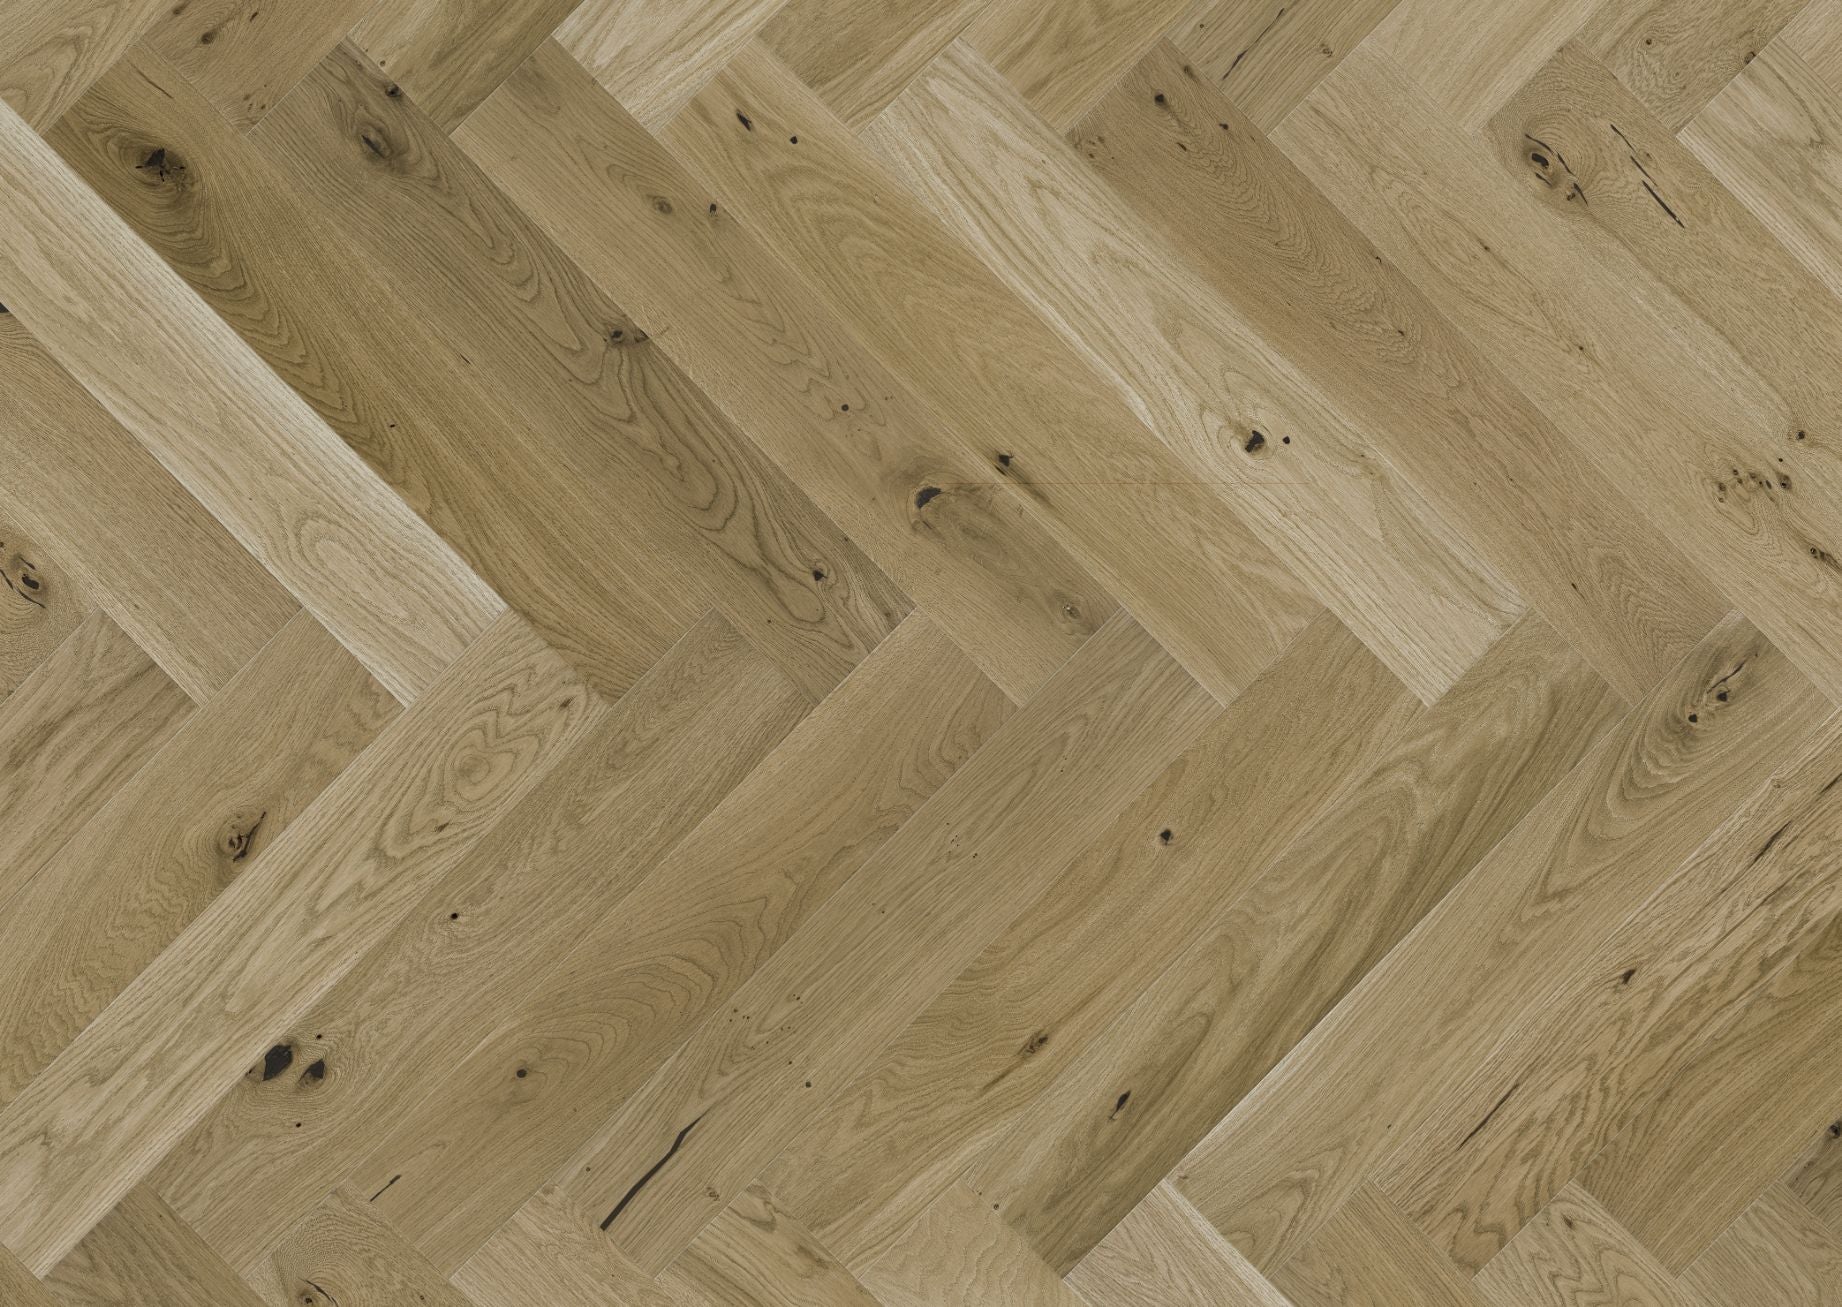 Natural wood flooring laid in herringbone pattern